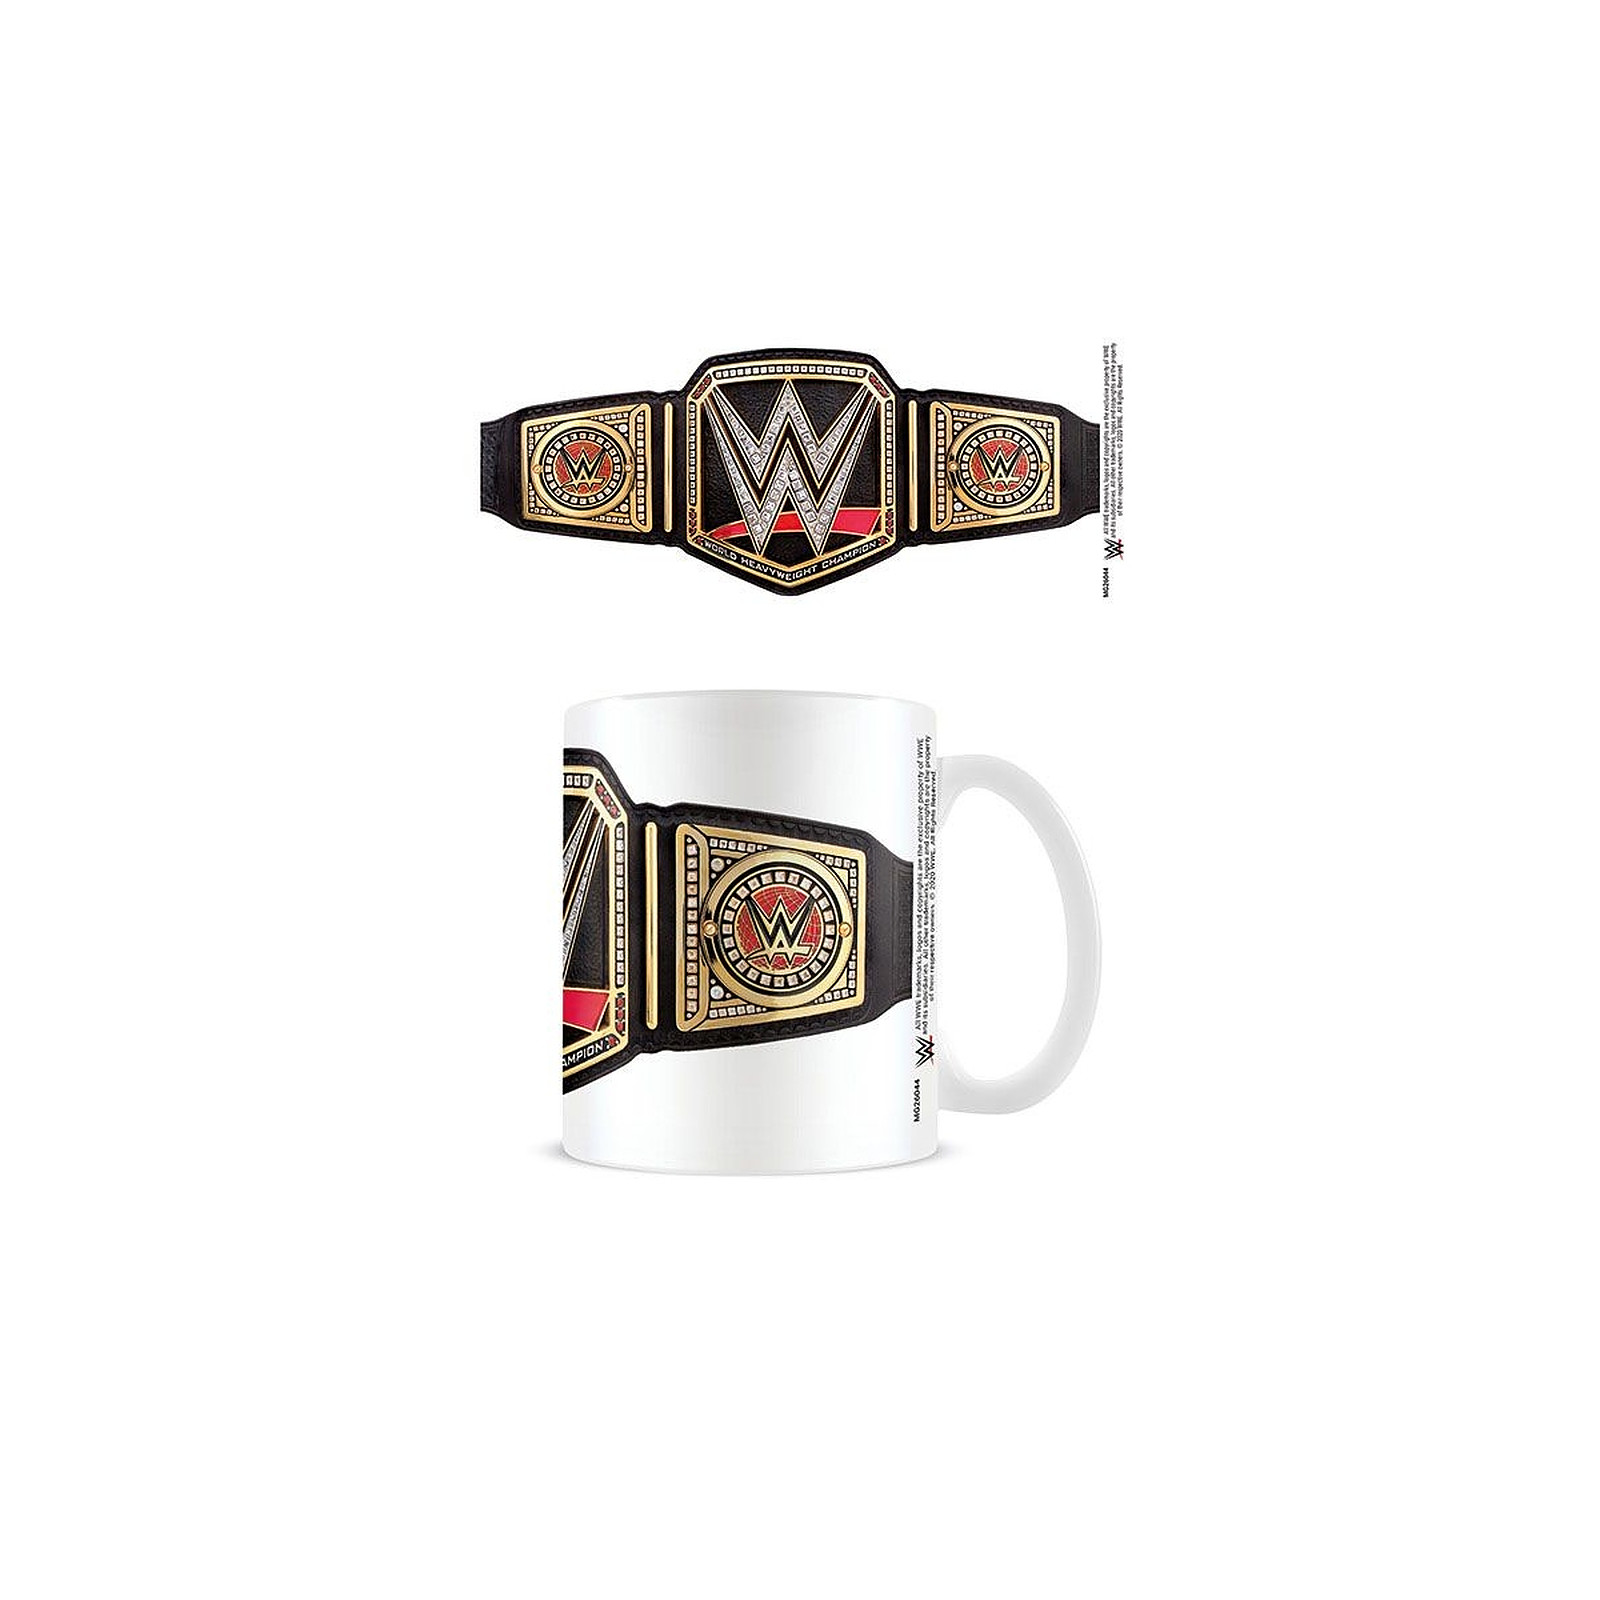 Catch - Mug WWE Championship Belt - Mugs Pyramid International